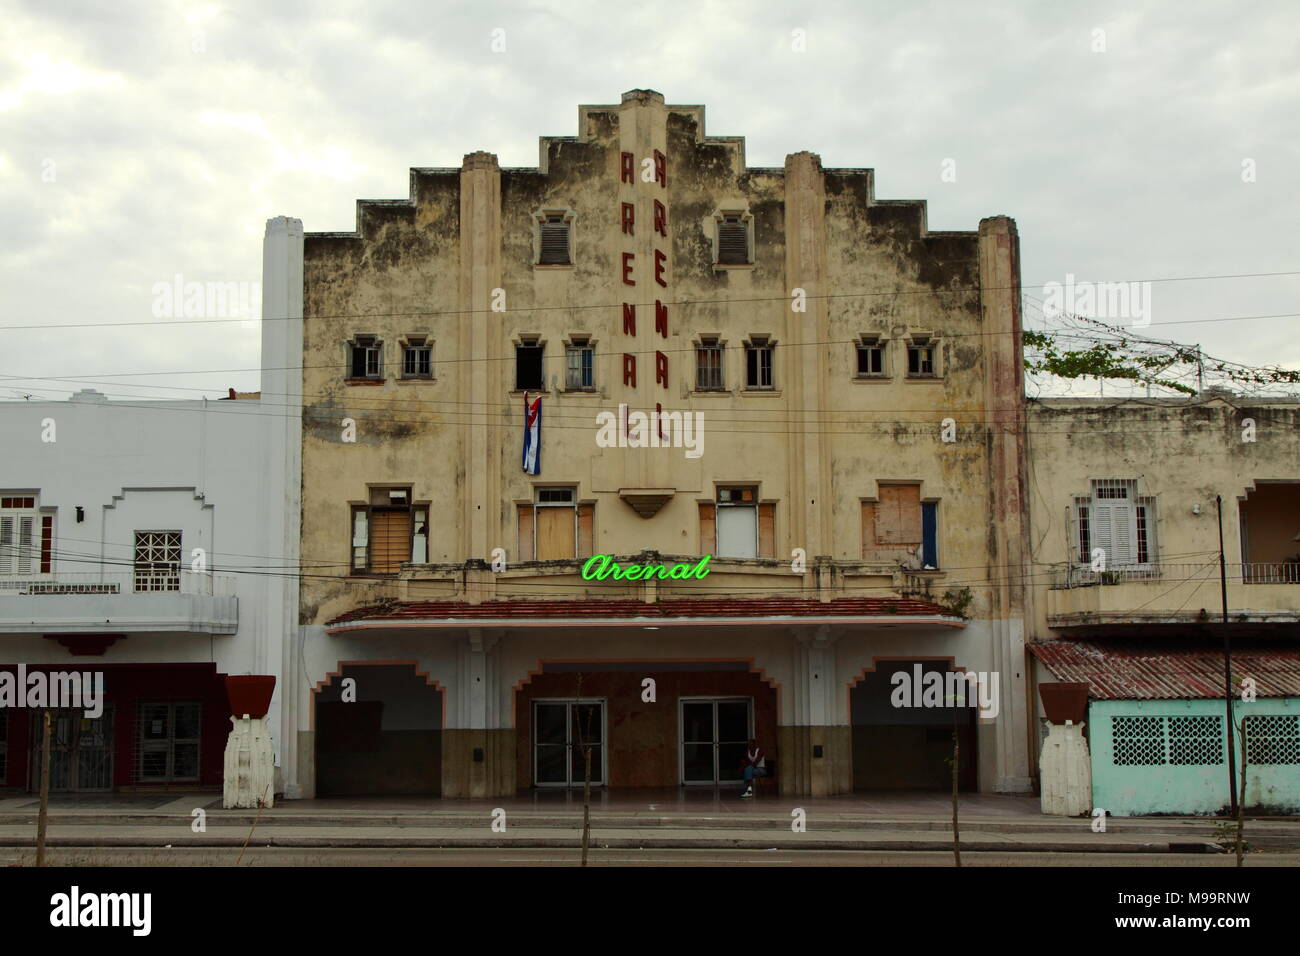 Cine Arenal cinema, Havana, Cuba Stock Photo